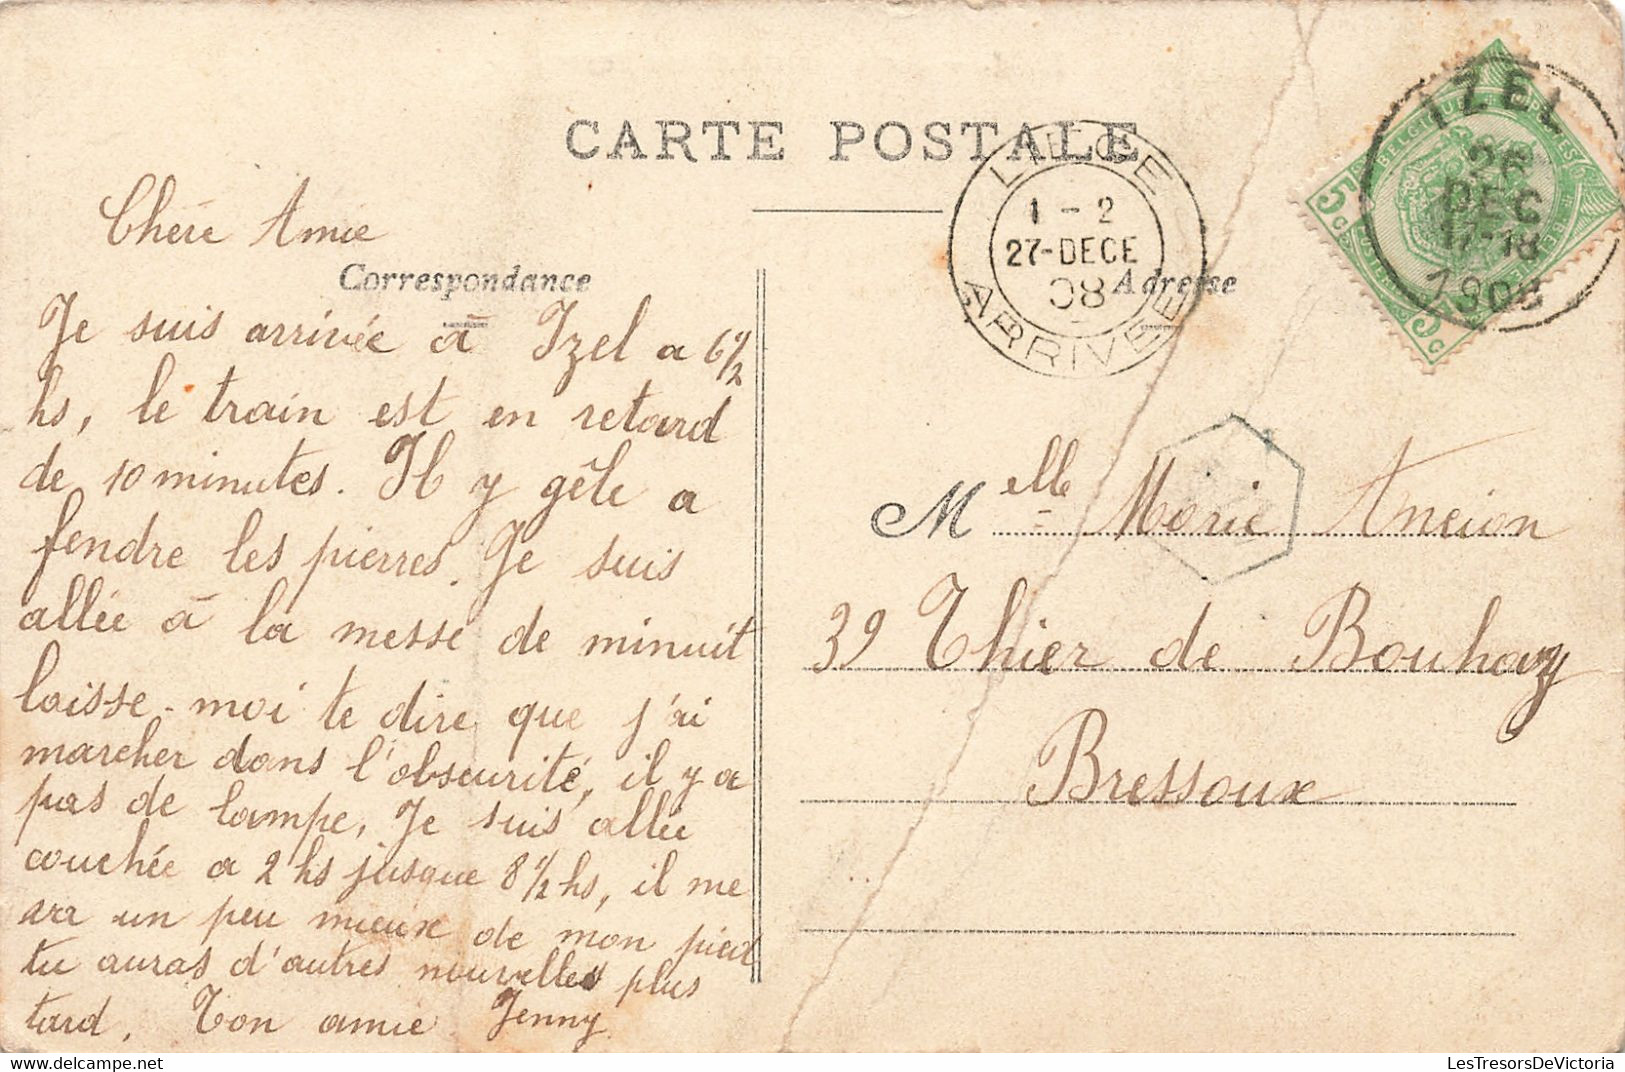 Belgique - Izel - Etablissement Des Frères - Edit. L. Duparque - Animé - Oblitéré Liège 1908 - Carte Postale Ancienne - Virton